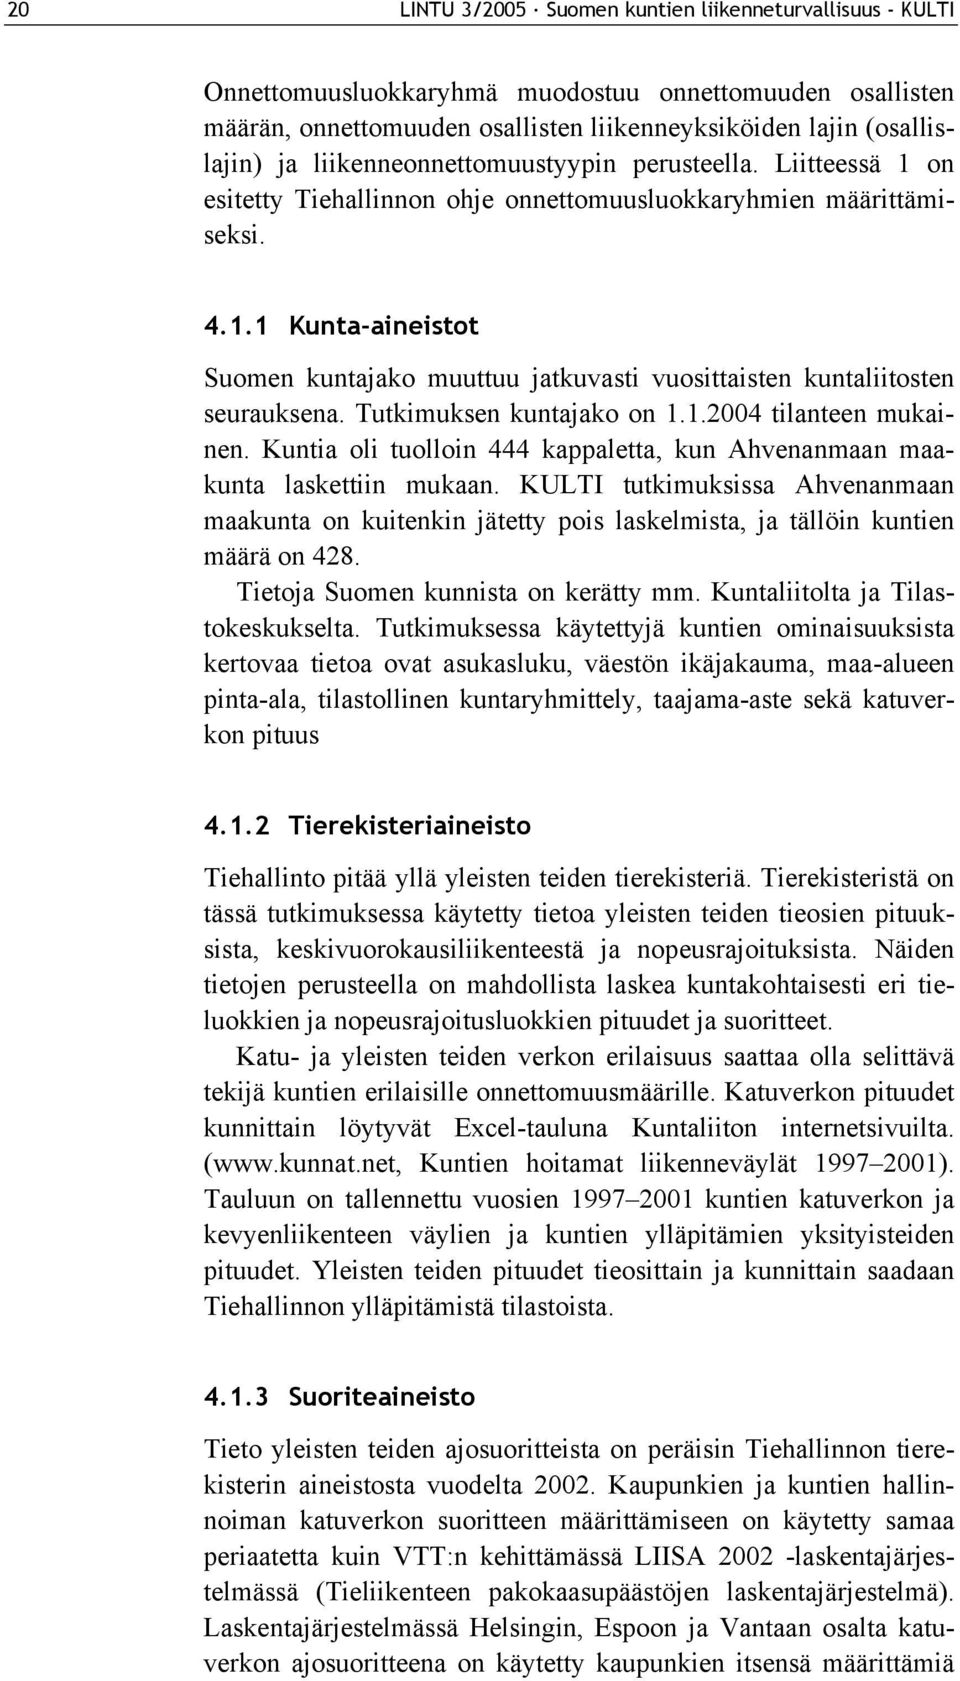 Tutkimuksen kuntajako on 1.1.2004 tilanteen mukainen. Kuntia oli tuolloin 444 kappaletta, kun Ahvenanmaan maakunta laskettiin mukaan.